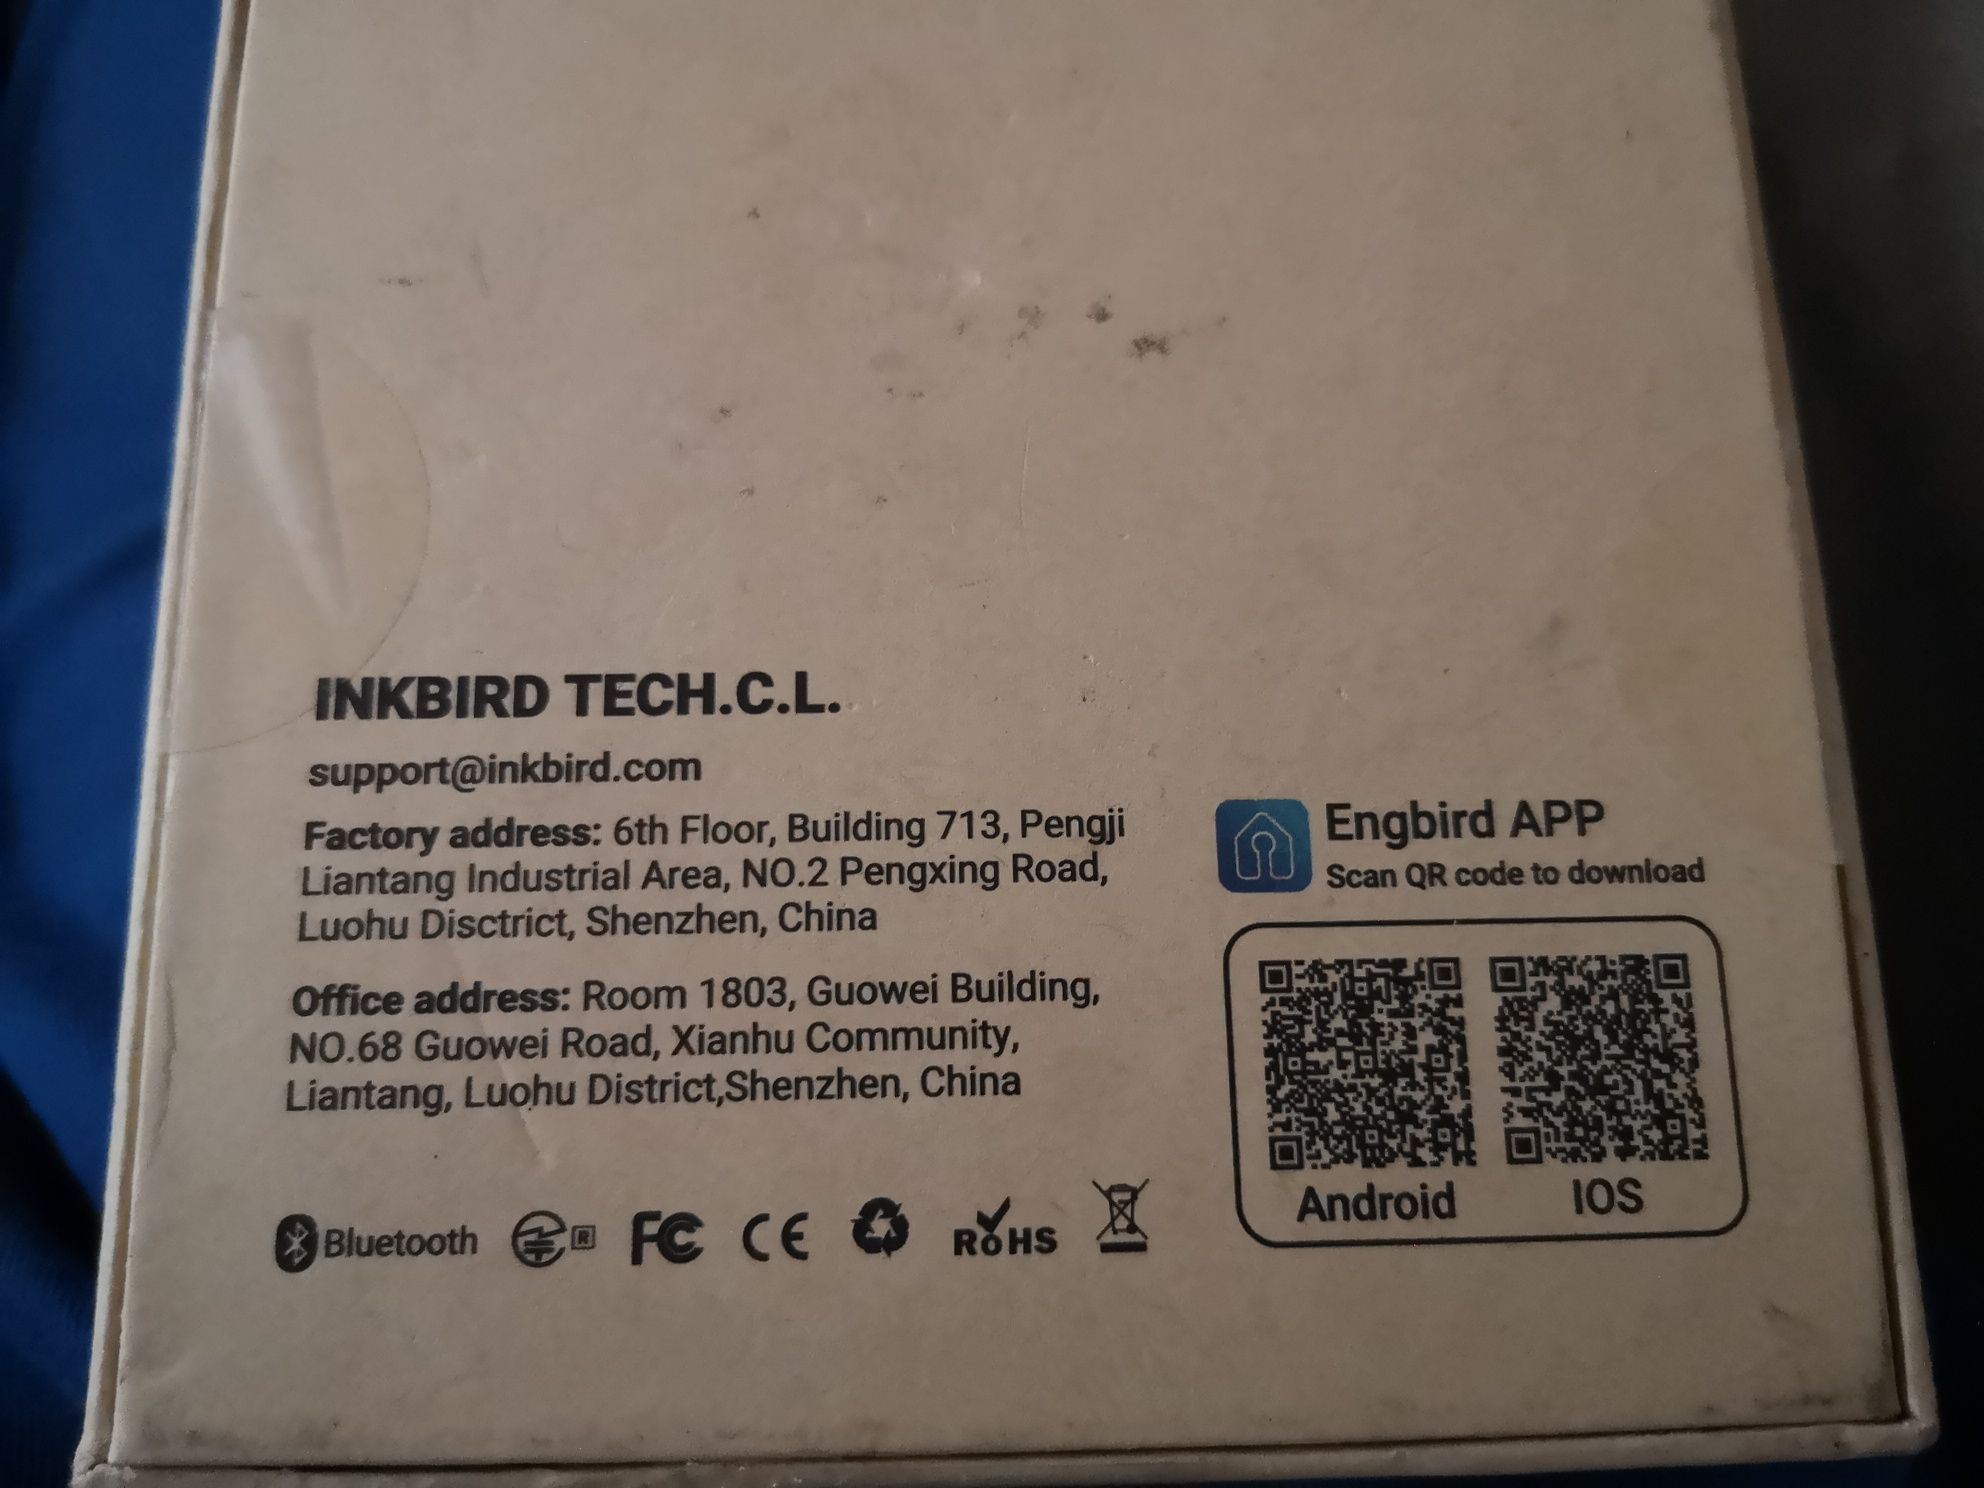 Inkbird IBS-TH2 PLUS Bluetooth termometr czujnik wilgotności